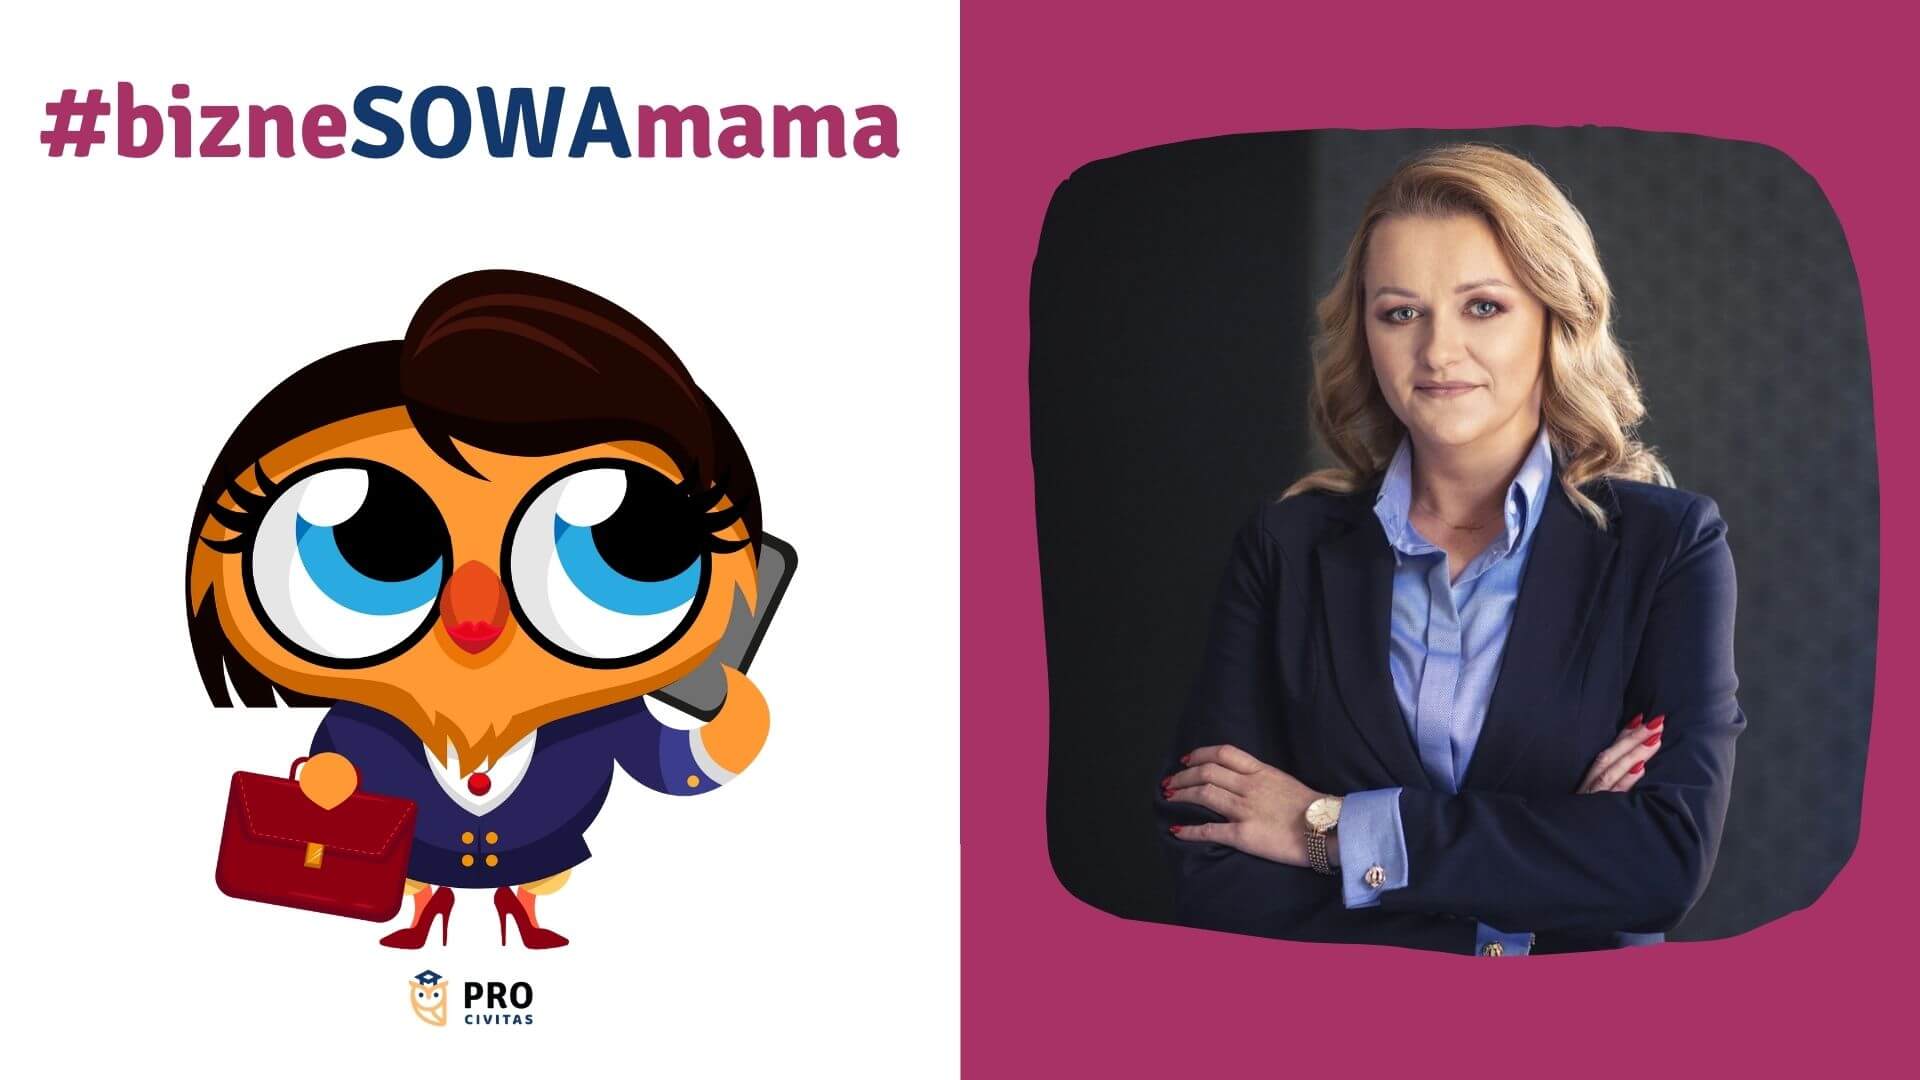 Akcja bizneSOWA mama, odc. 3 - wywiad z Ewą Potocką-Kaletą – dyrektor Szkoły - PRO Civitas